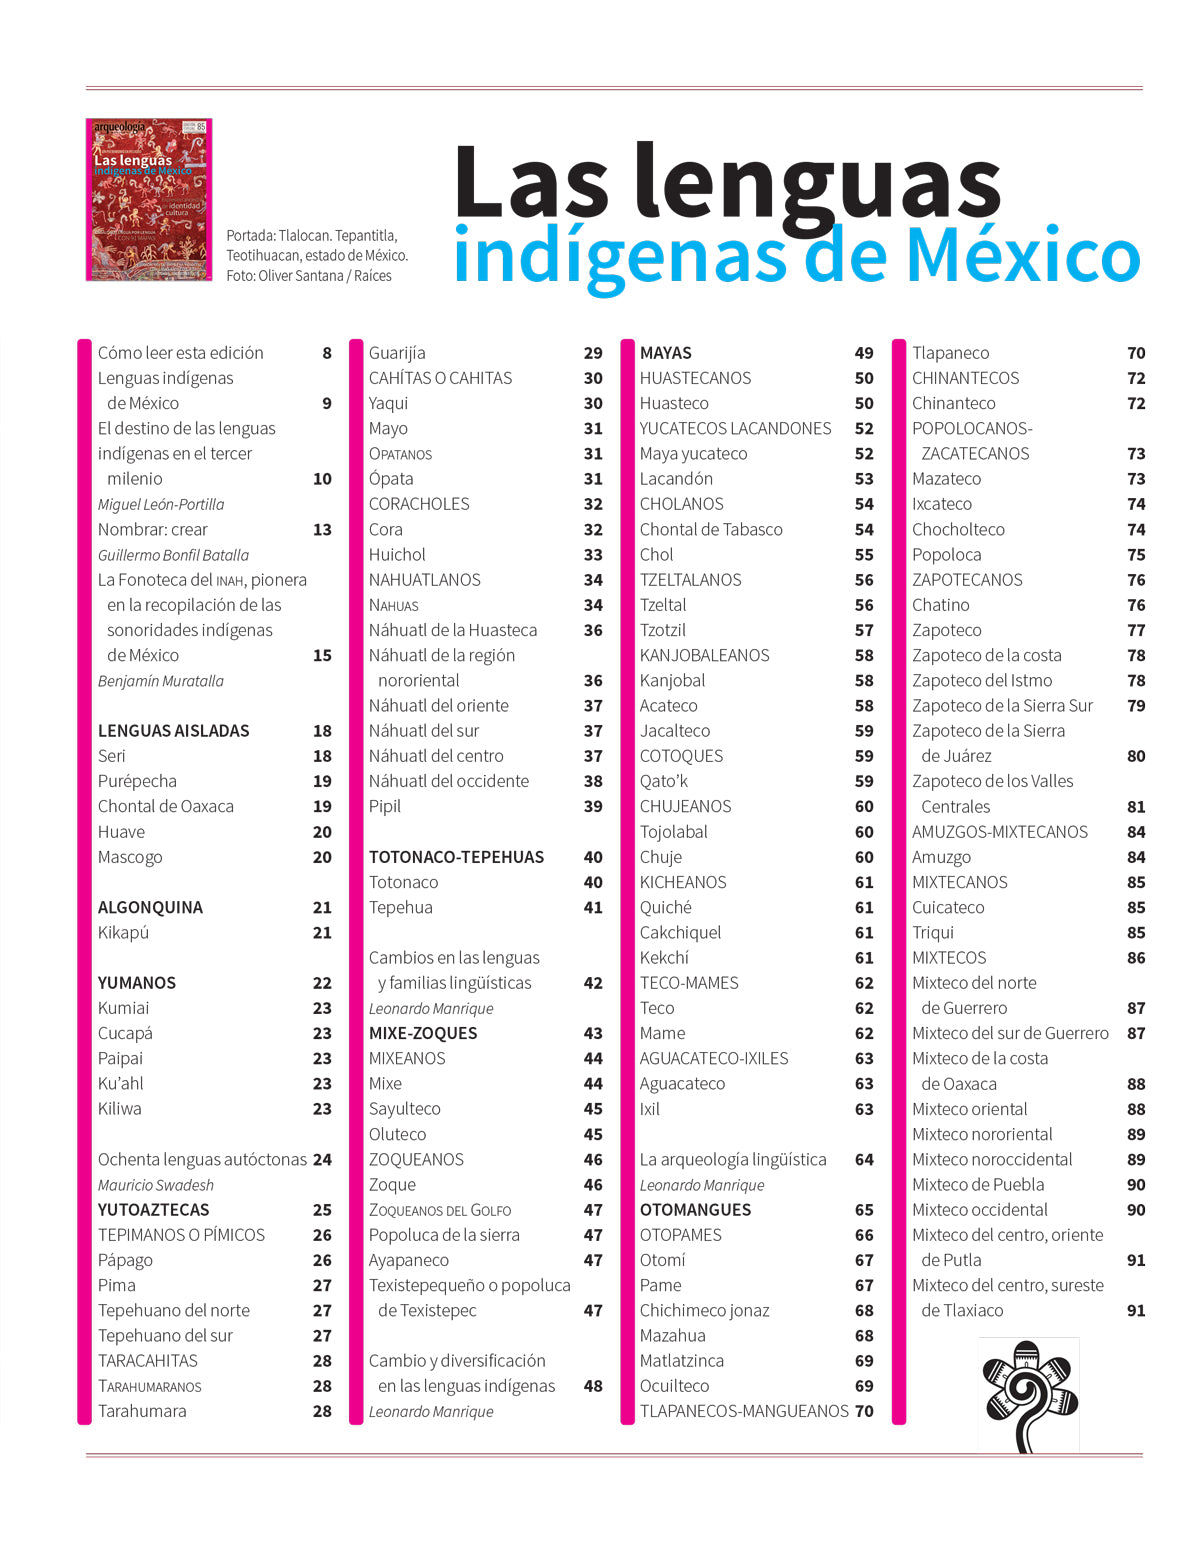 Las lenguas indígenas de México